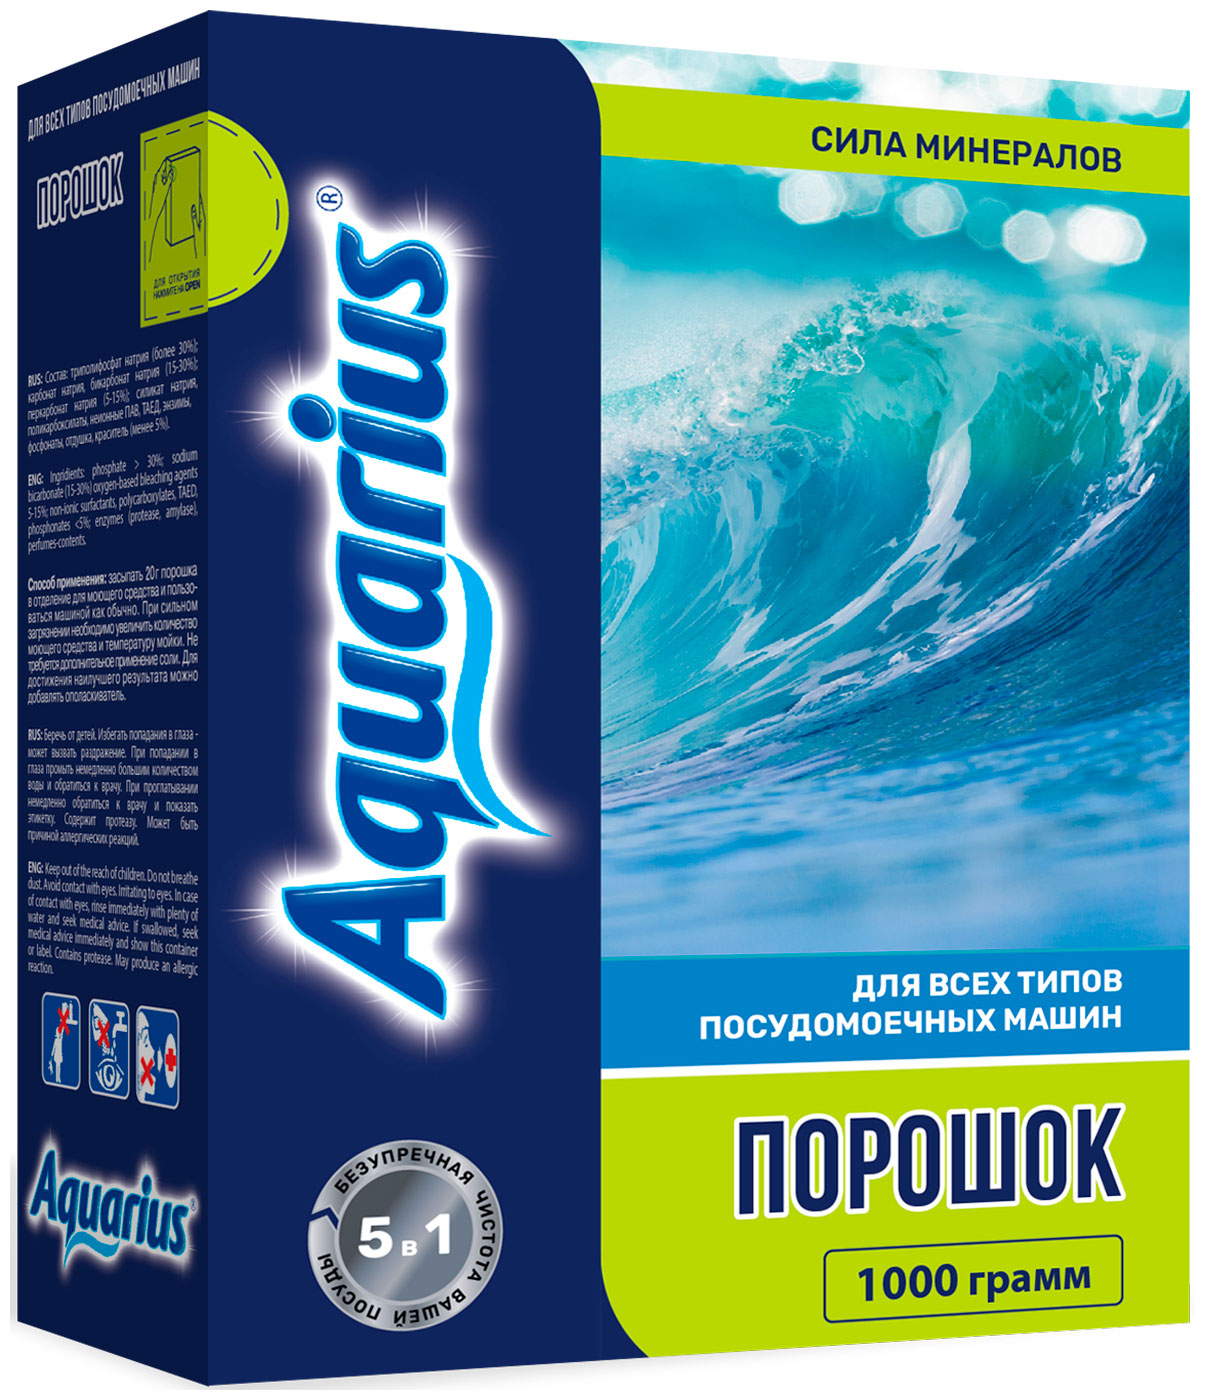 Порошок Aquarius ''All in 1'' 1000 г all one nutritech original formula мультивитаминный и минеральный порошок без добавок 1000 г 2 2 фунта